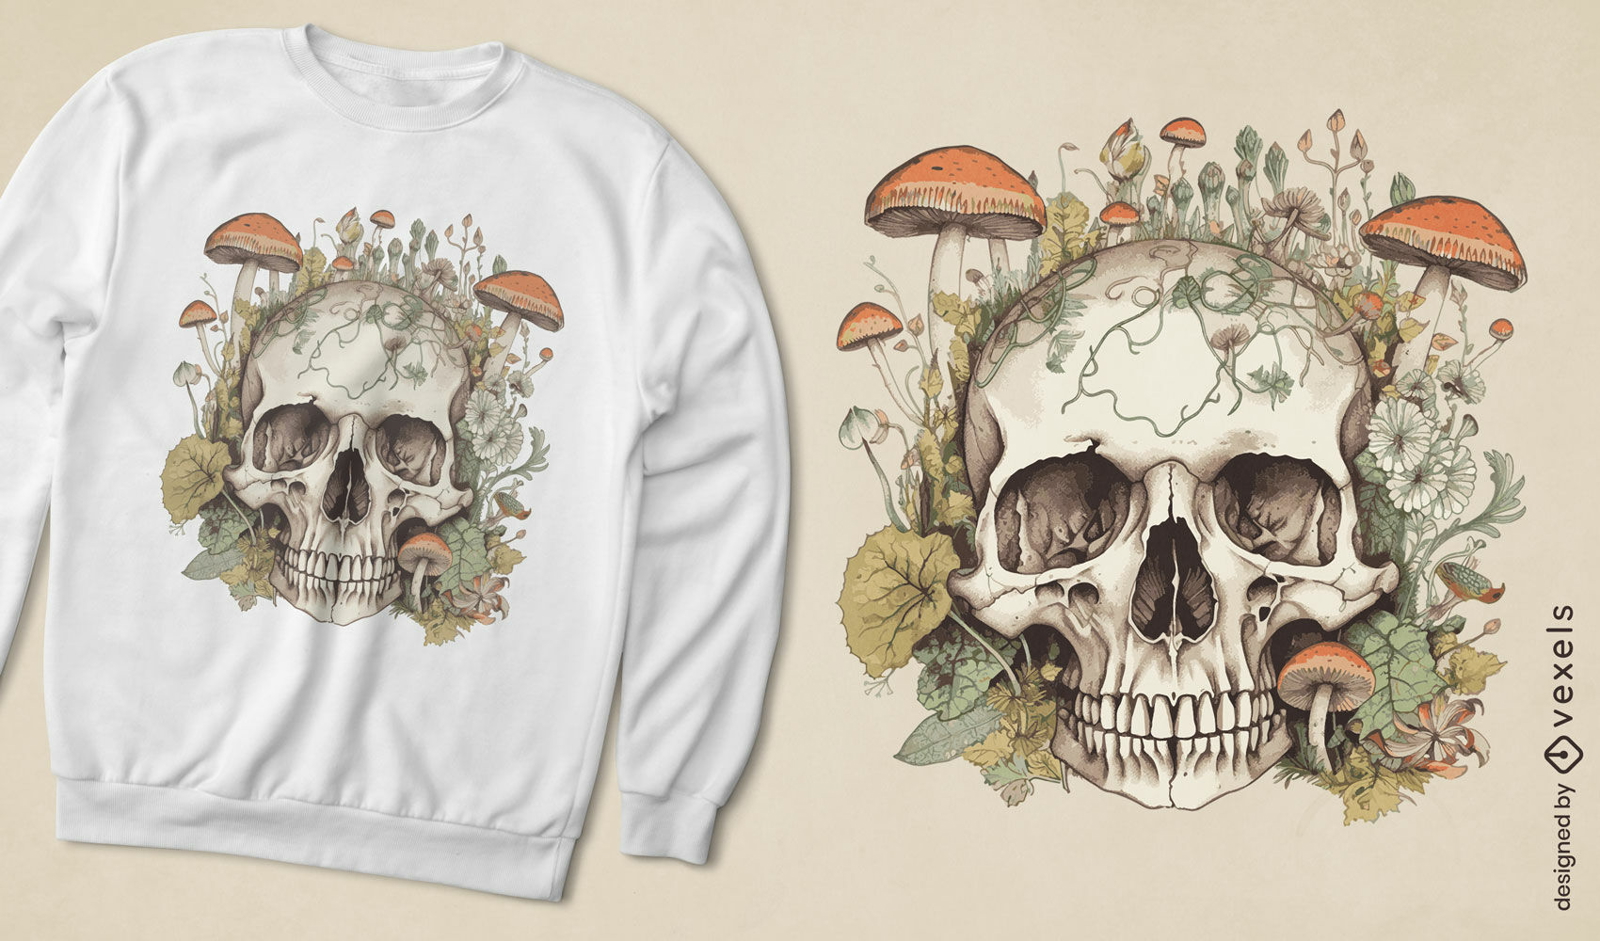 Skull with mushrooms t-shirt design